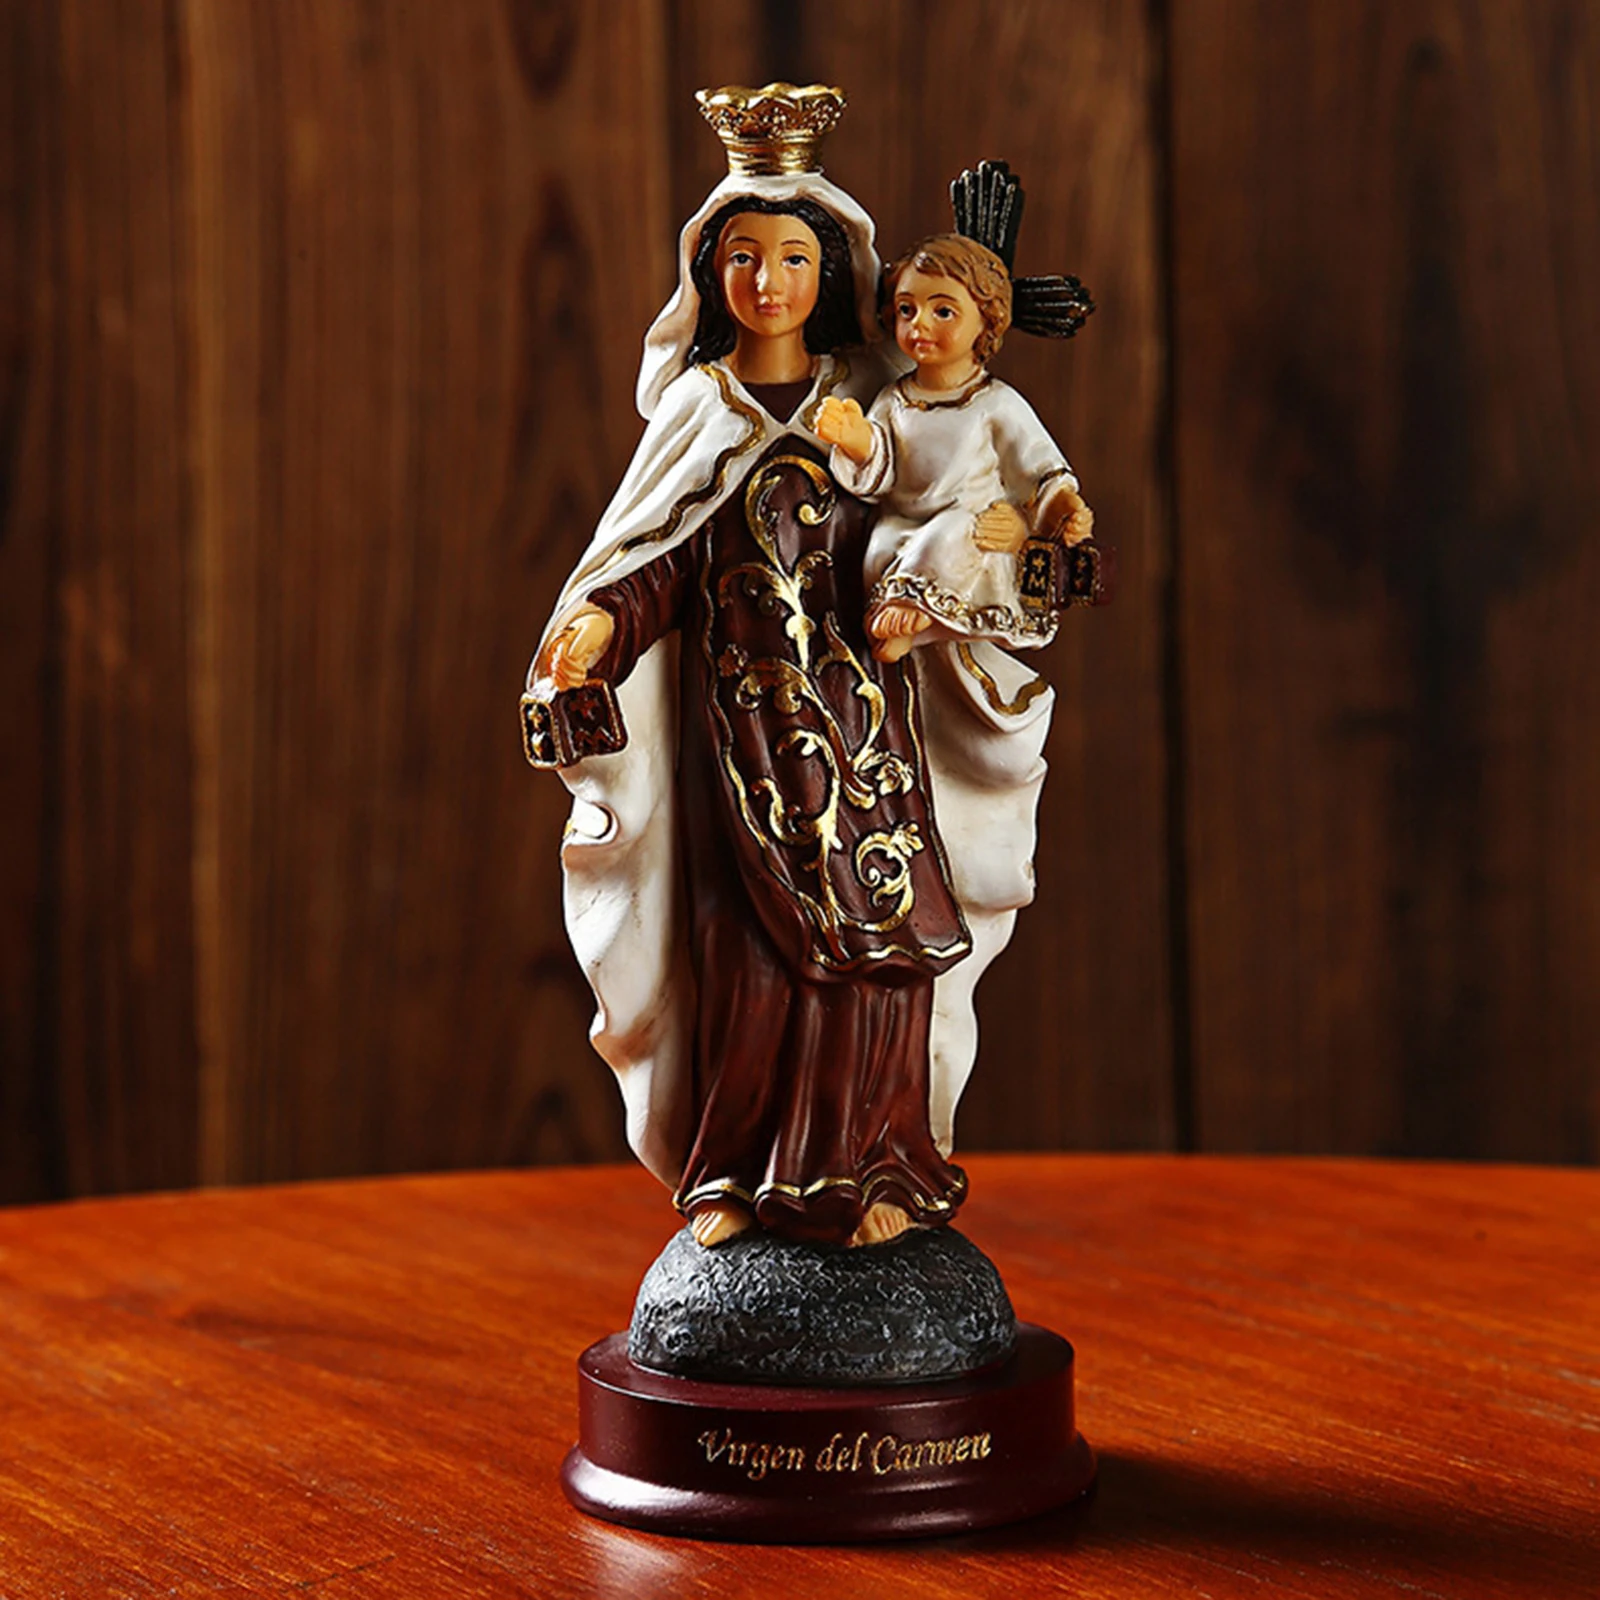 Gesù Cristo Bambino Resina Statua Famiglia Decorativa per Home Office Decor Buoni Regali Commemorativi 